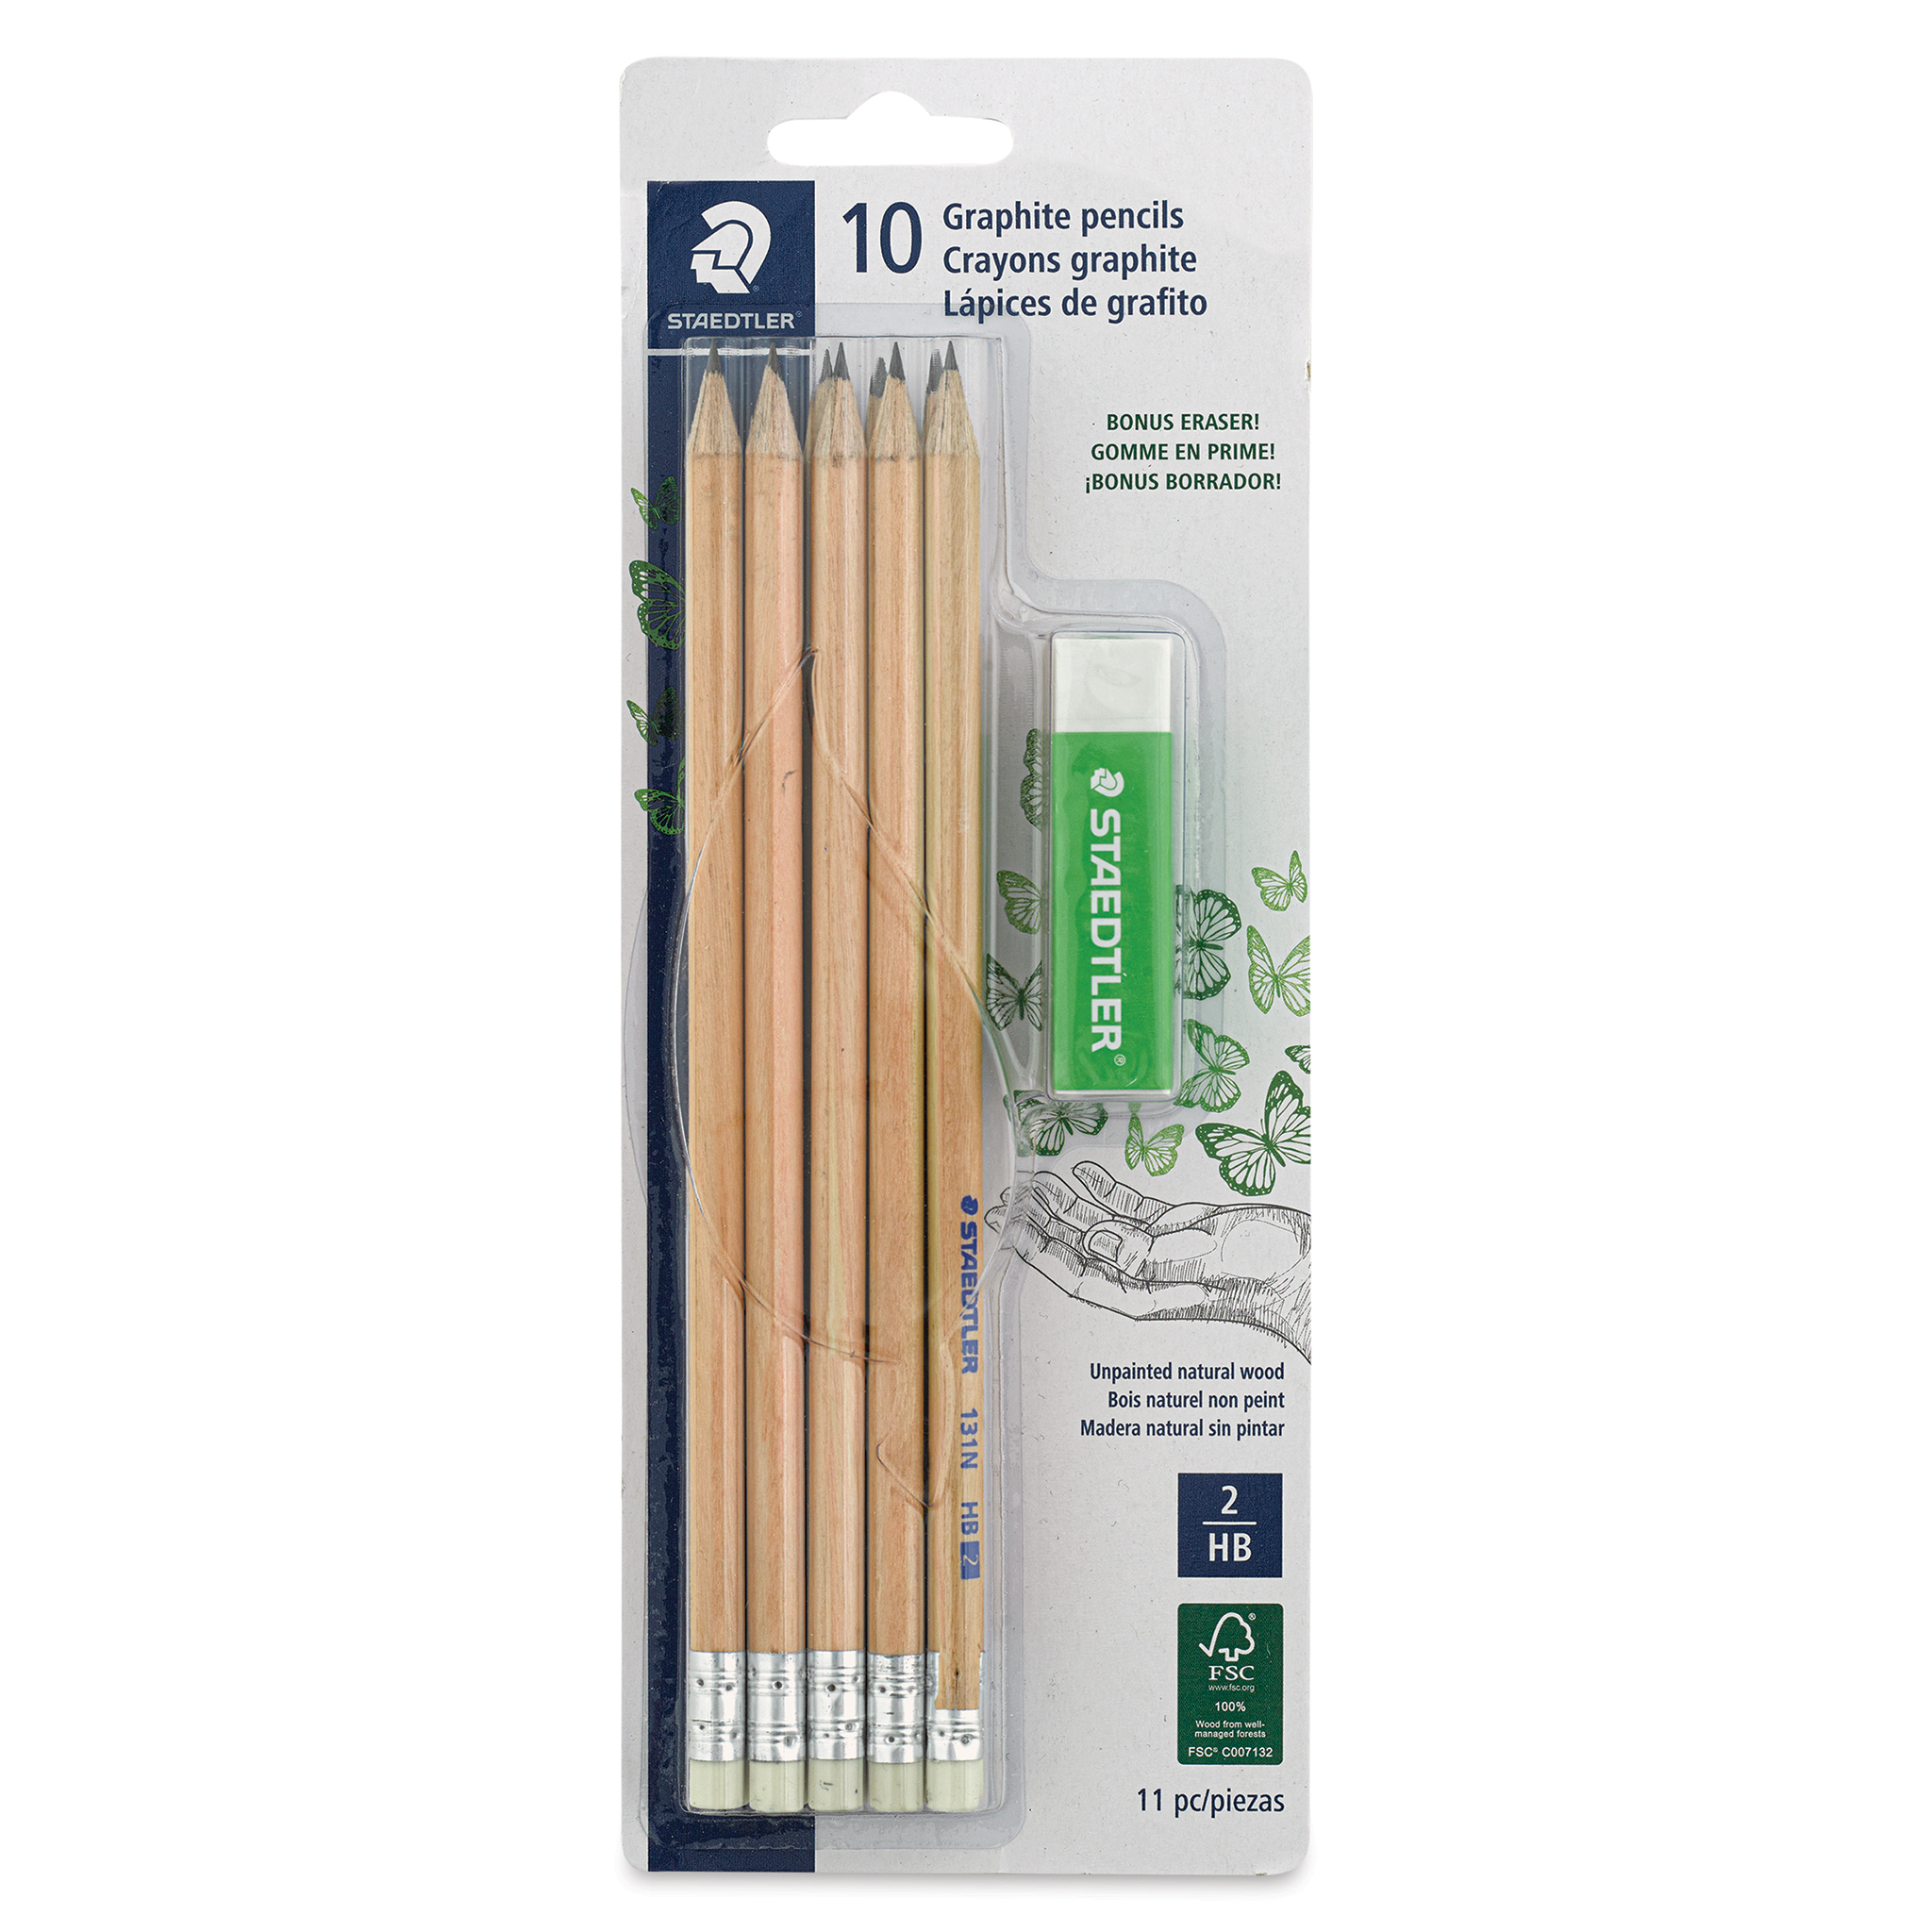 Staedtler Presharpened Wood Case HB Pencil Eraser Tip Office School Craft Art Drawing 